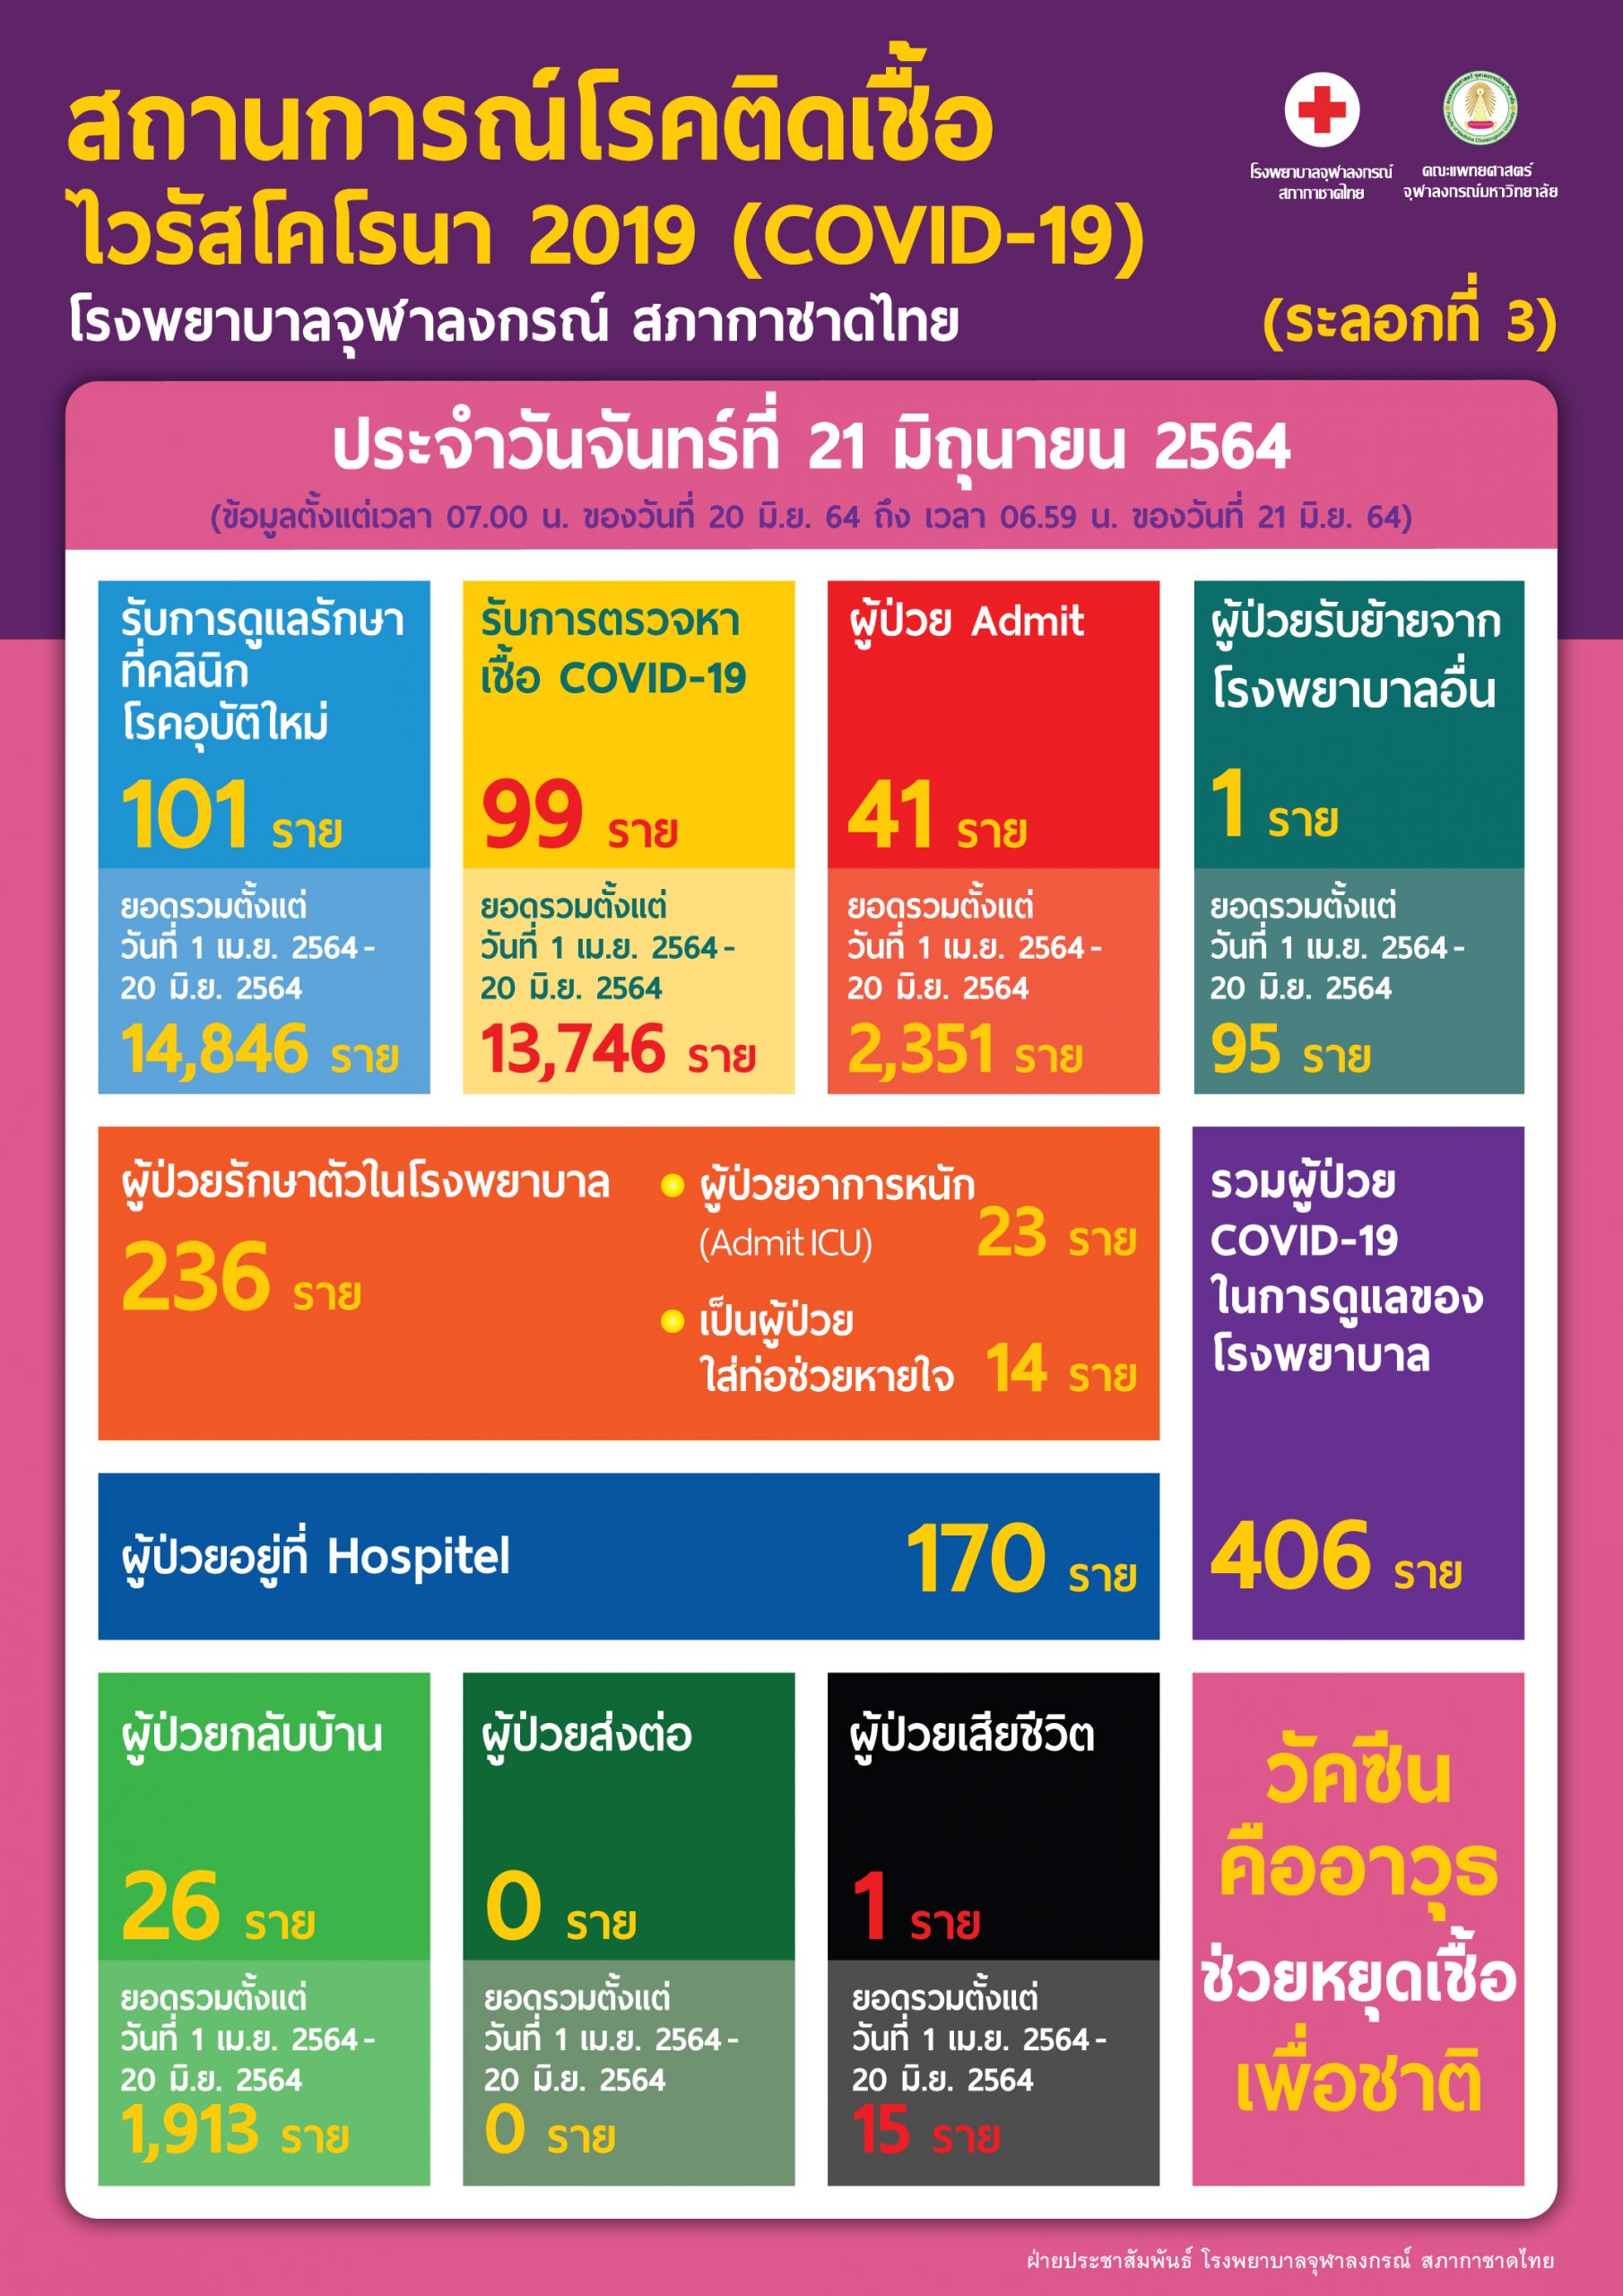 สถานการณ์โรคติดเชื้อไวรัสโคโรนา 2019 (COVID-19) (ระลอกที่ 3) โรงพยาบาลจุฬาลงกรณ์ สภากาชาดไทย  ประจำวันจันทร์ที่ 21 มิถุนายน 2564